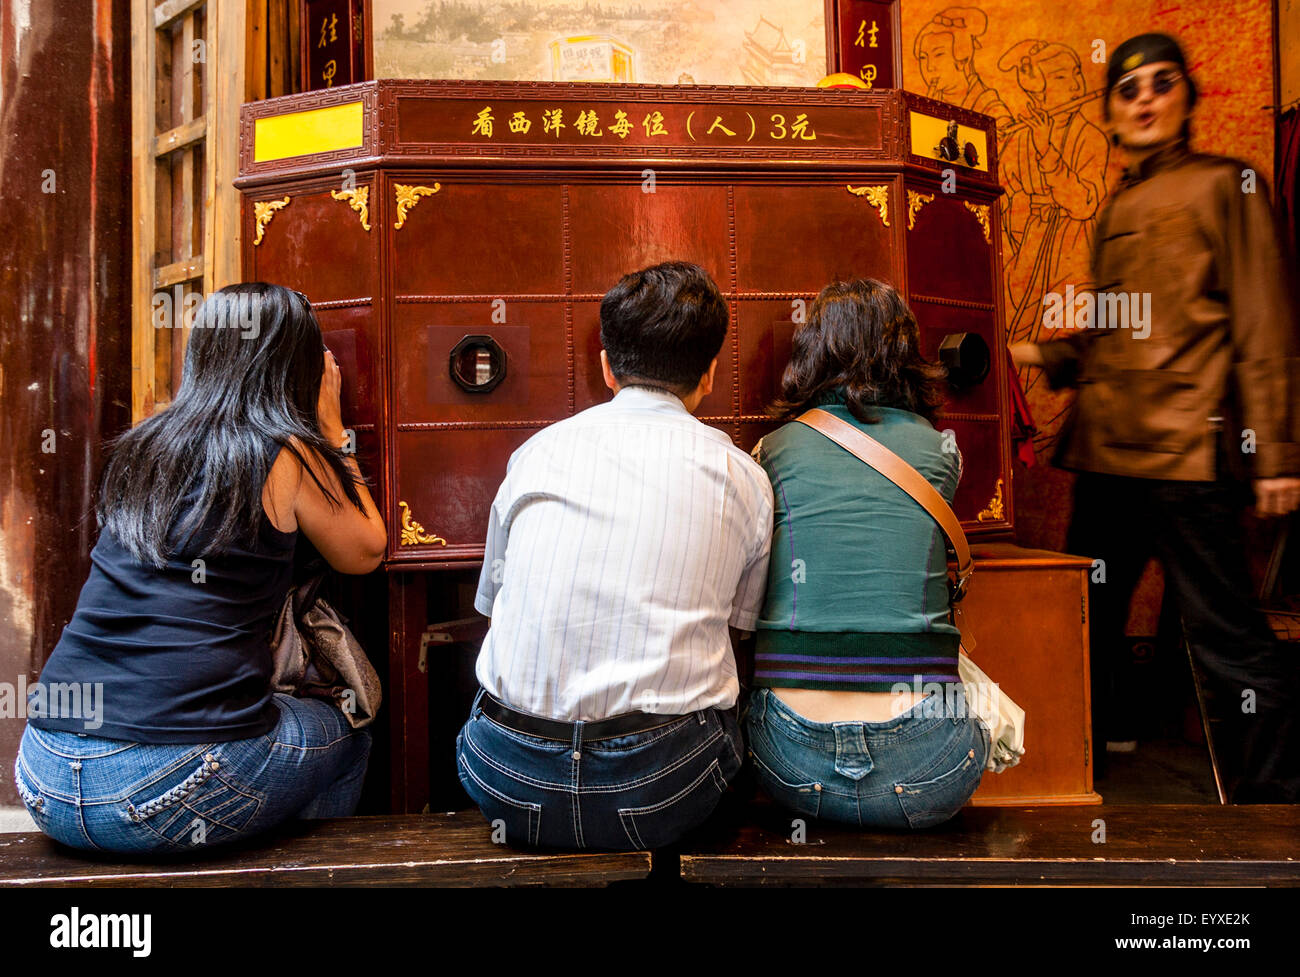 Les gens regardent un peep-show traditionnel chinois, le vieux Shanghai, Shanghai, Chine Banque D'Images